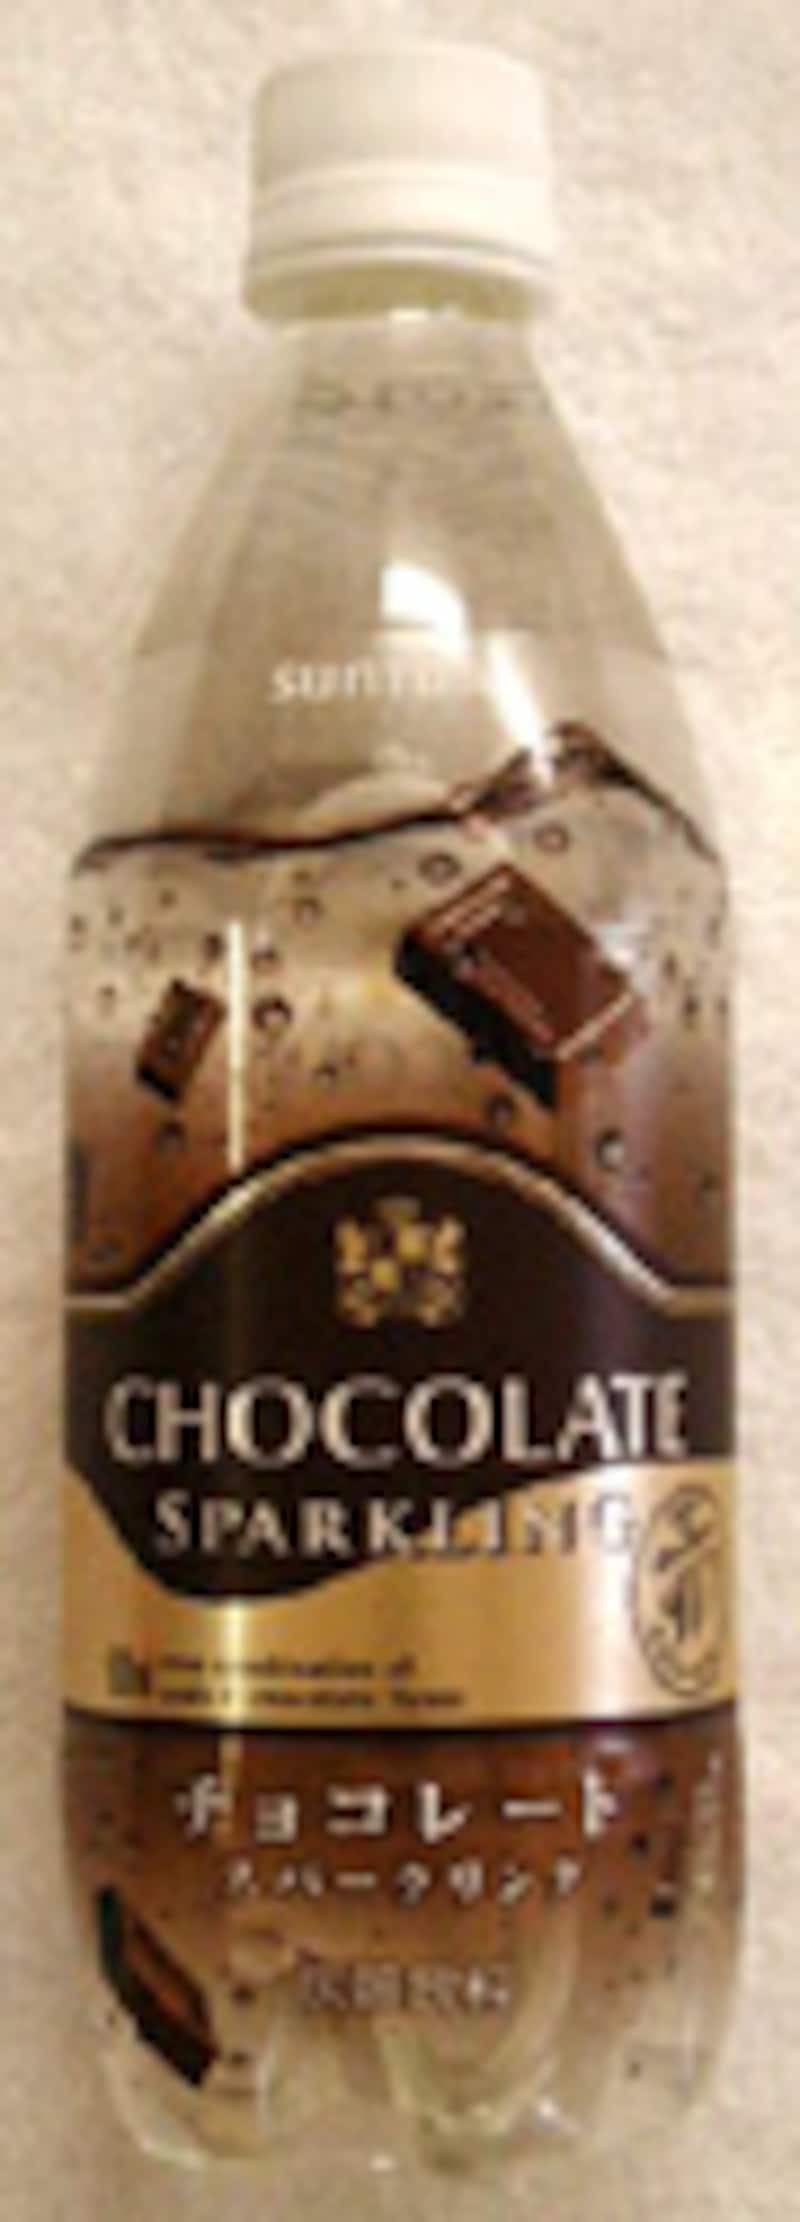 サントリー チョコレートスパークリング